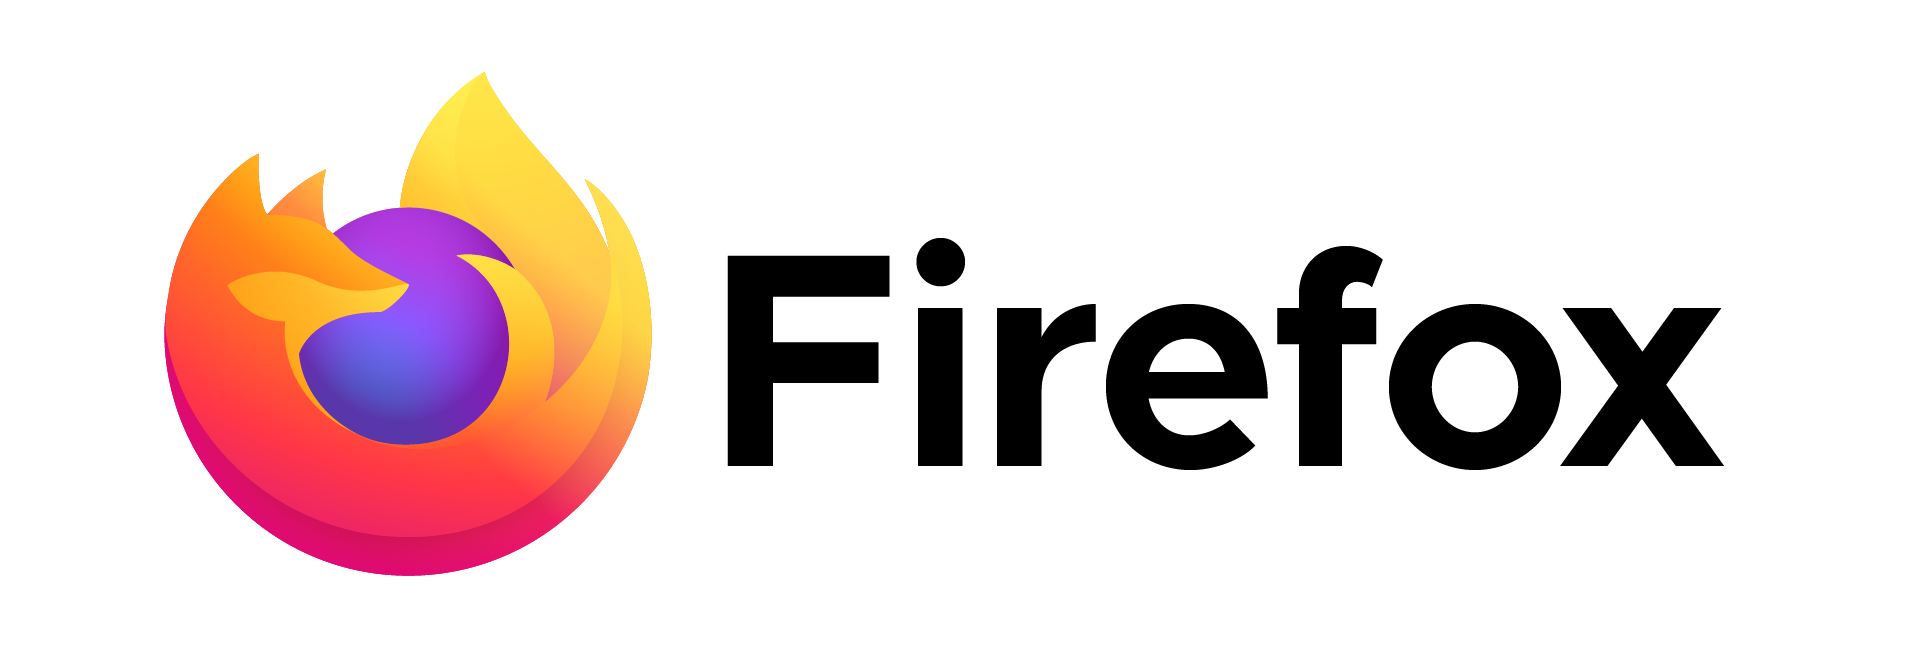 Logo de navegador Mozilla Firefox